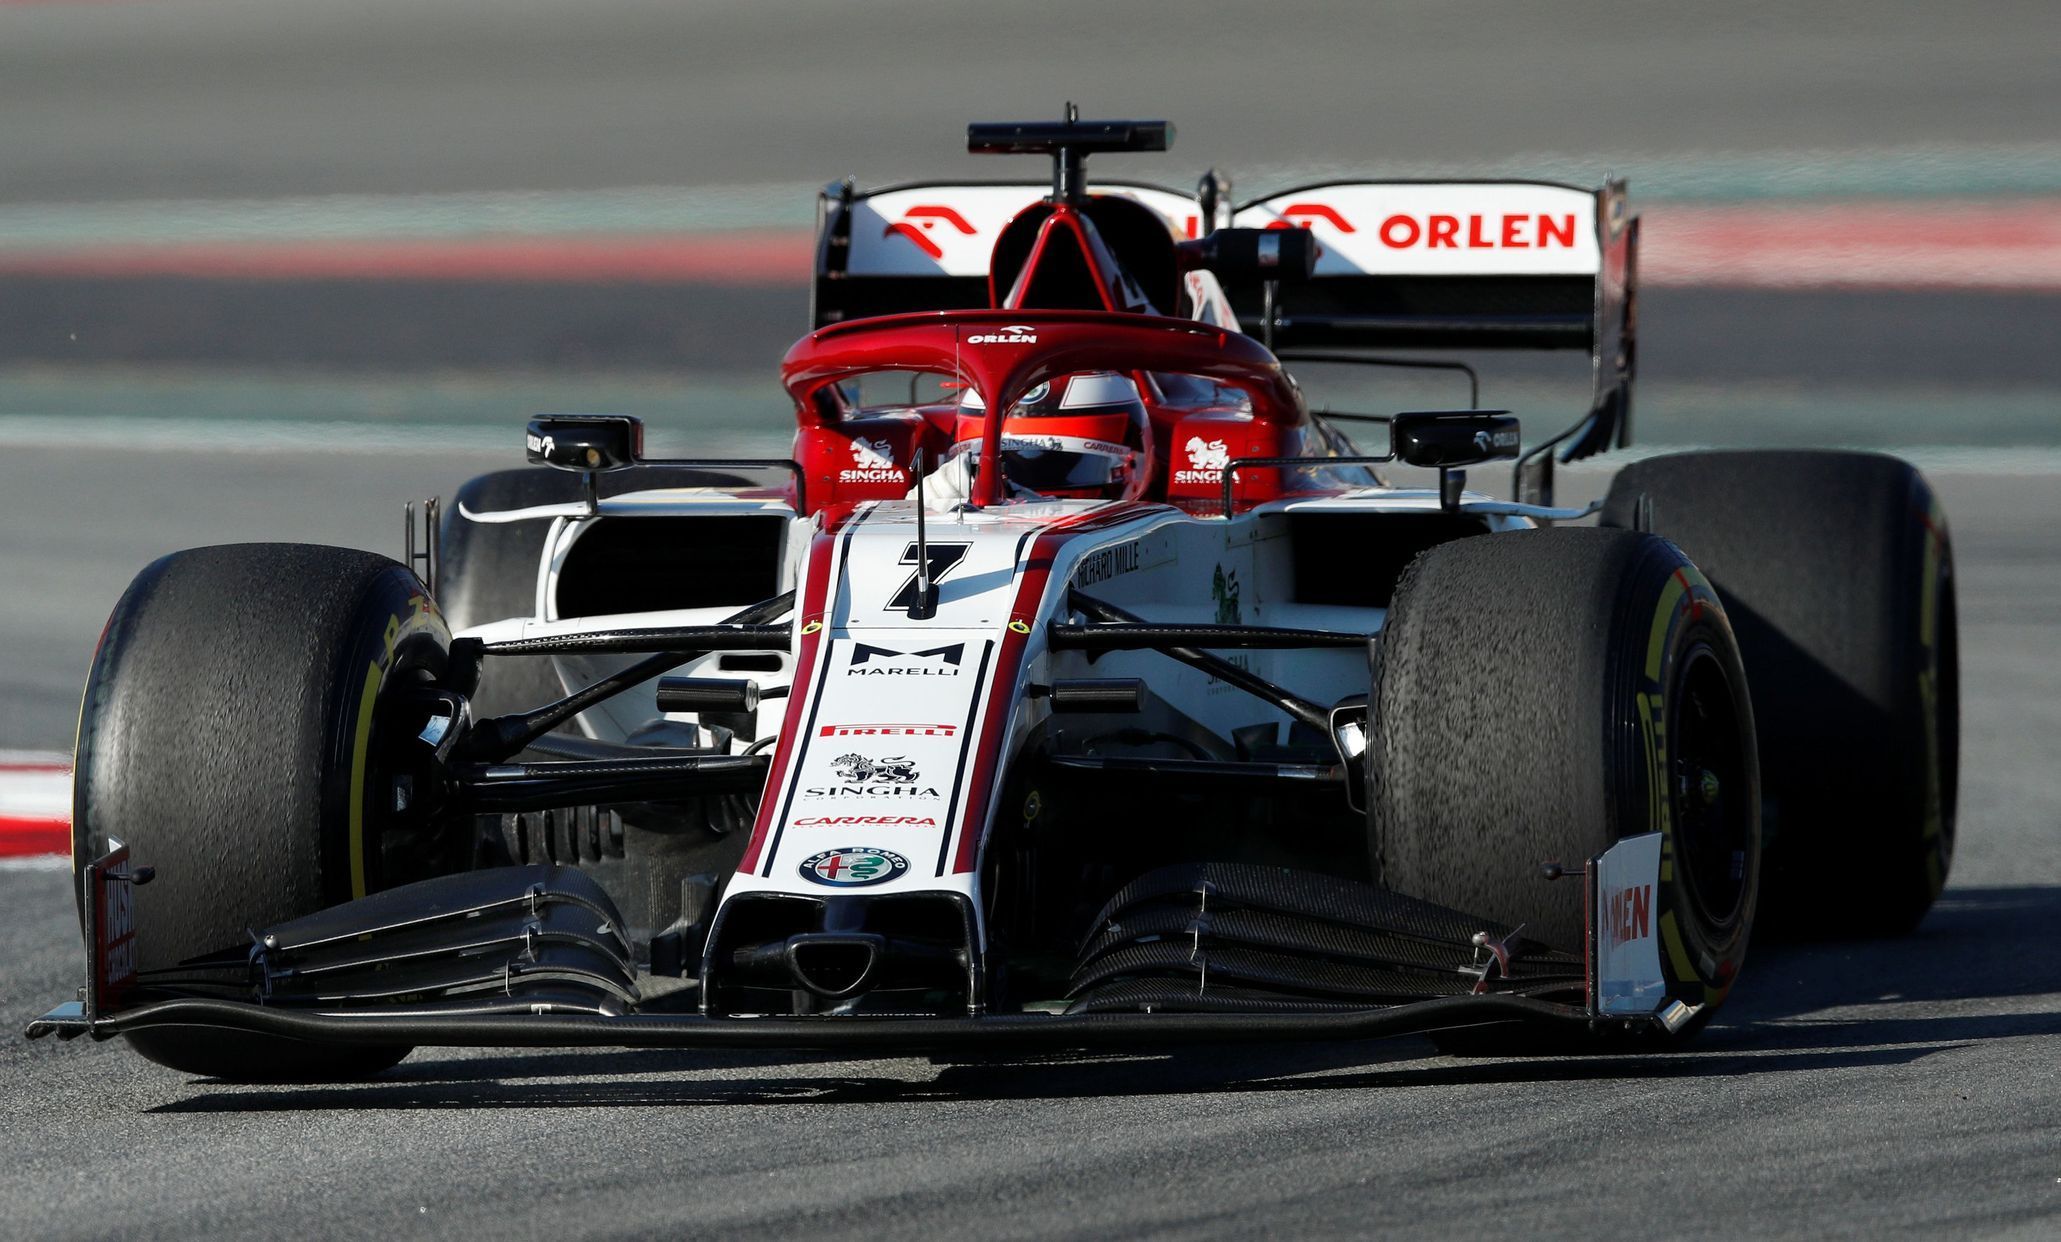 Kimi Räikkönen v Alfě Romeo při prvních testech F1 v Barceloně 2020